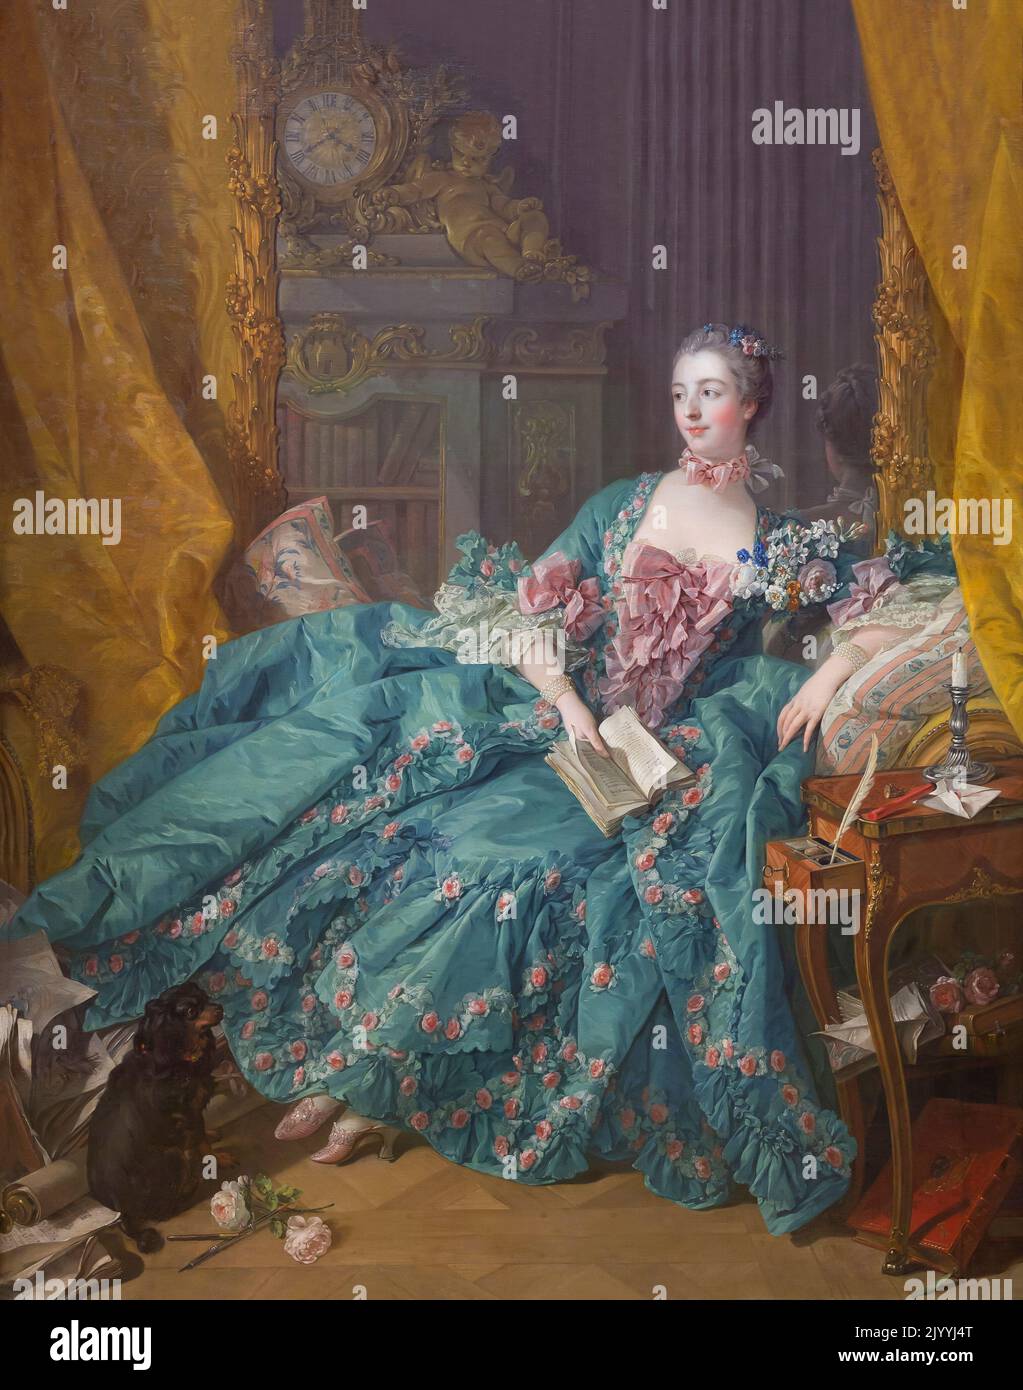 Madame de Pompadour, Francois Boucher, 1756, Alte Pinakothek, Múnich, Alemania, Europa Foto de stock